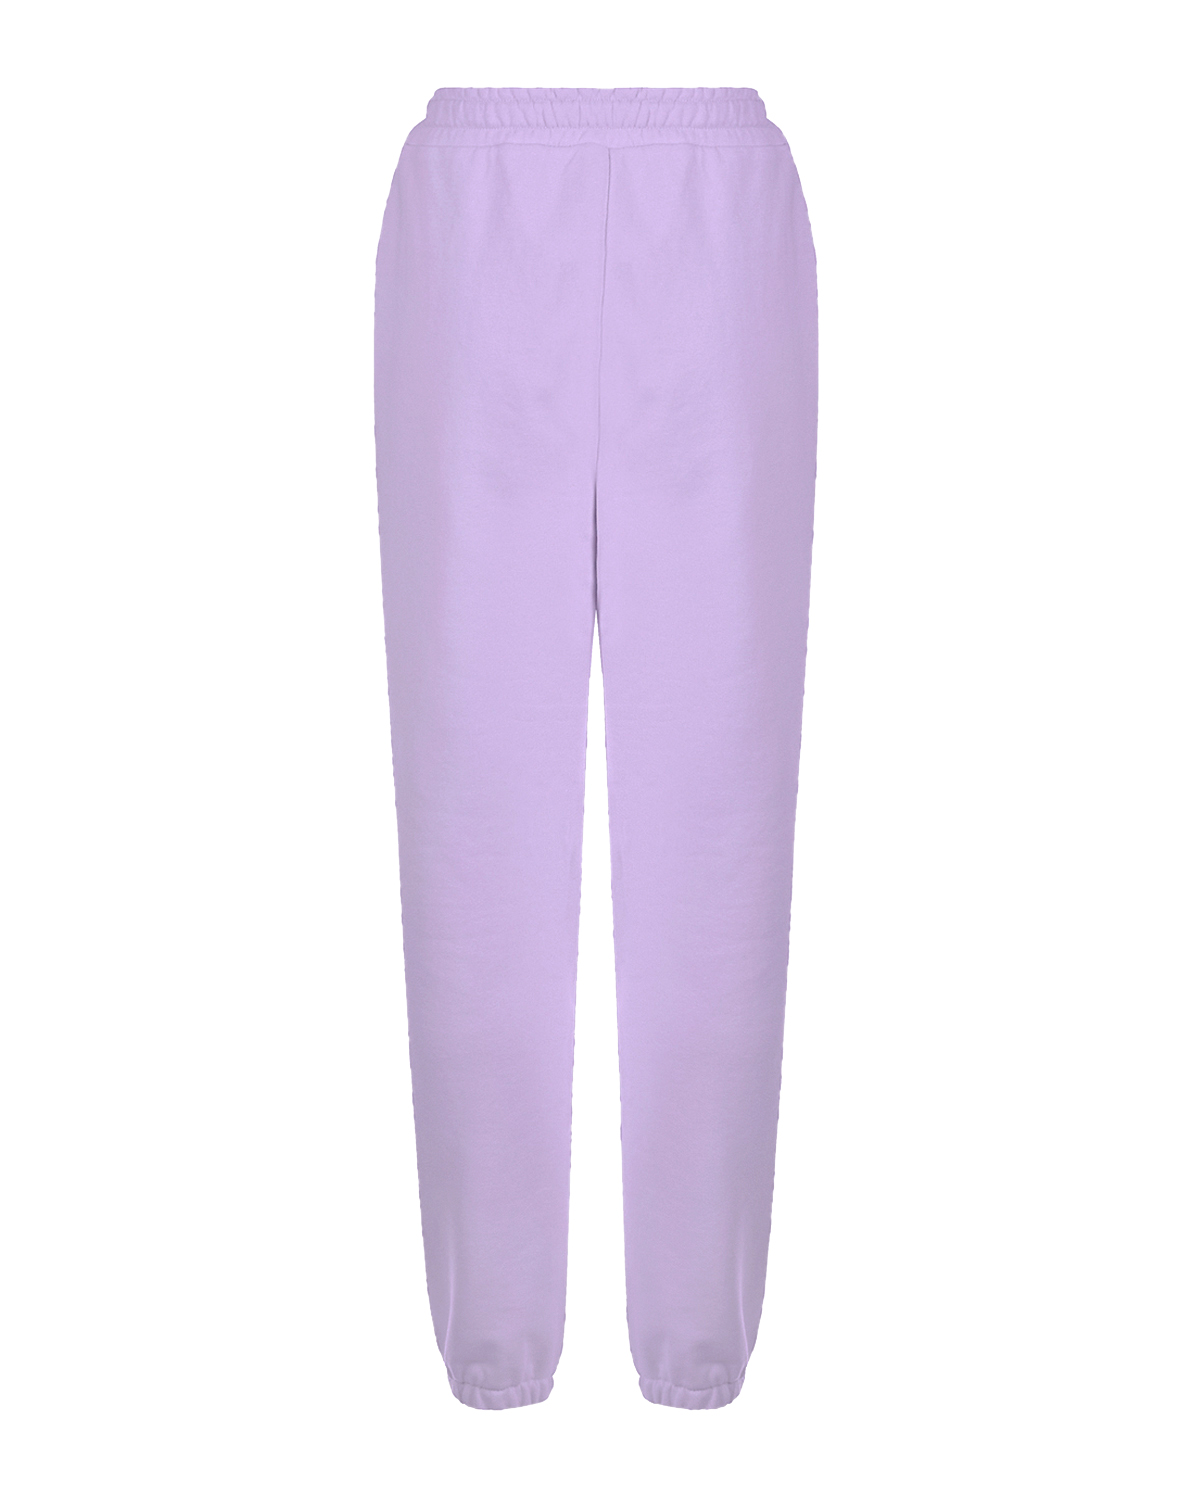 Сиреневые трикотажные брюки Dan Maralex, размер 42, цвет сиреневый - фото 5